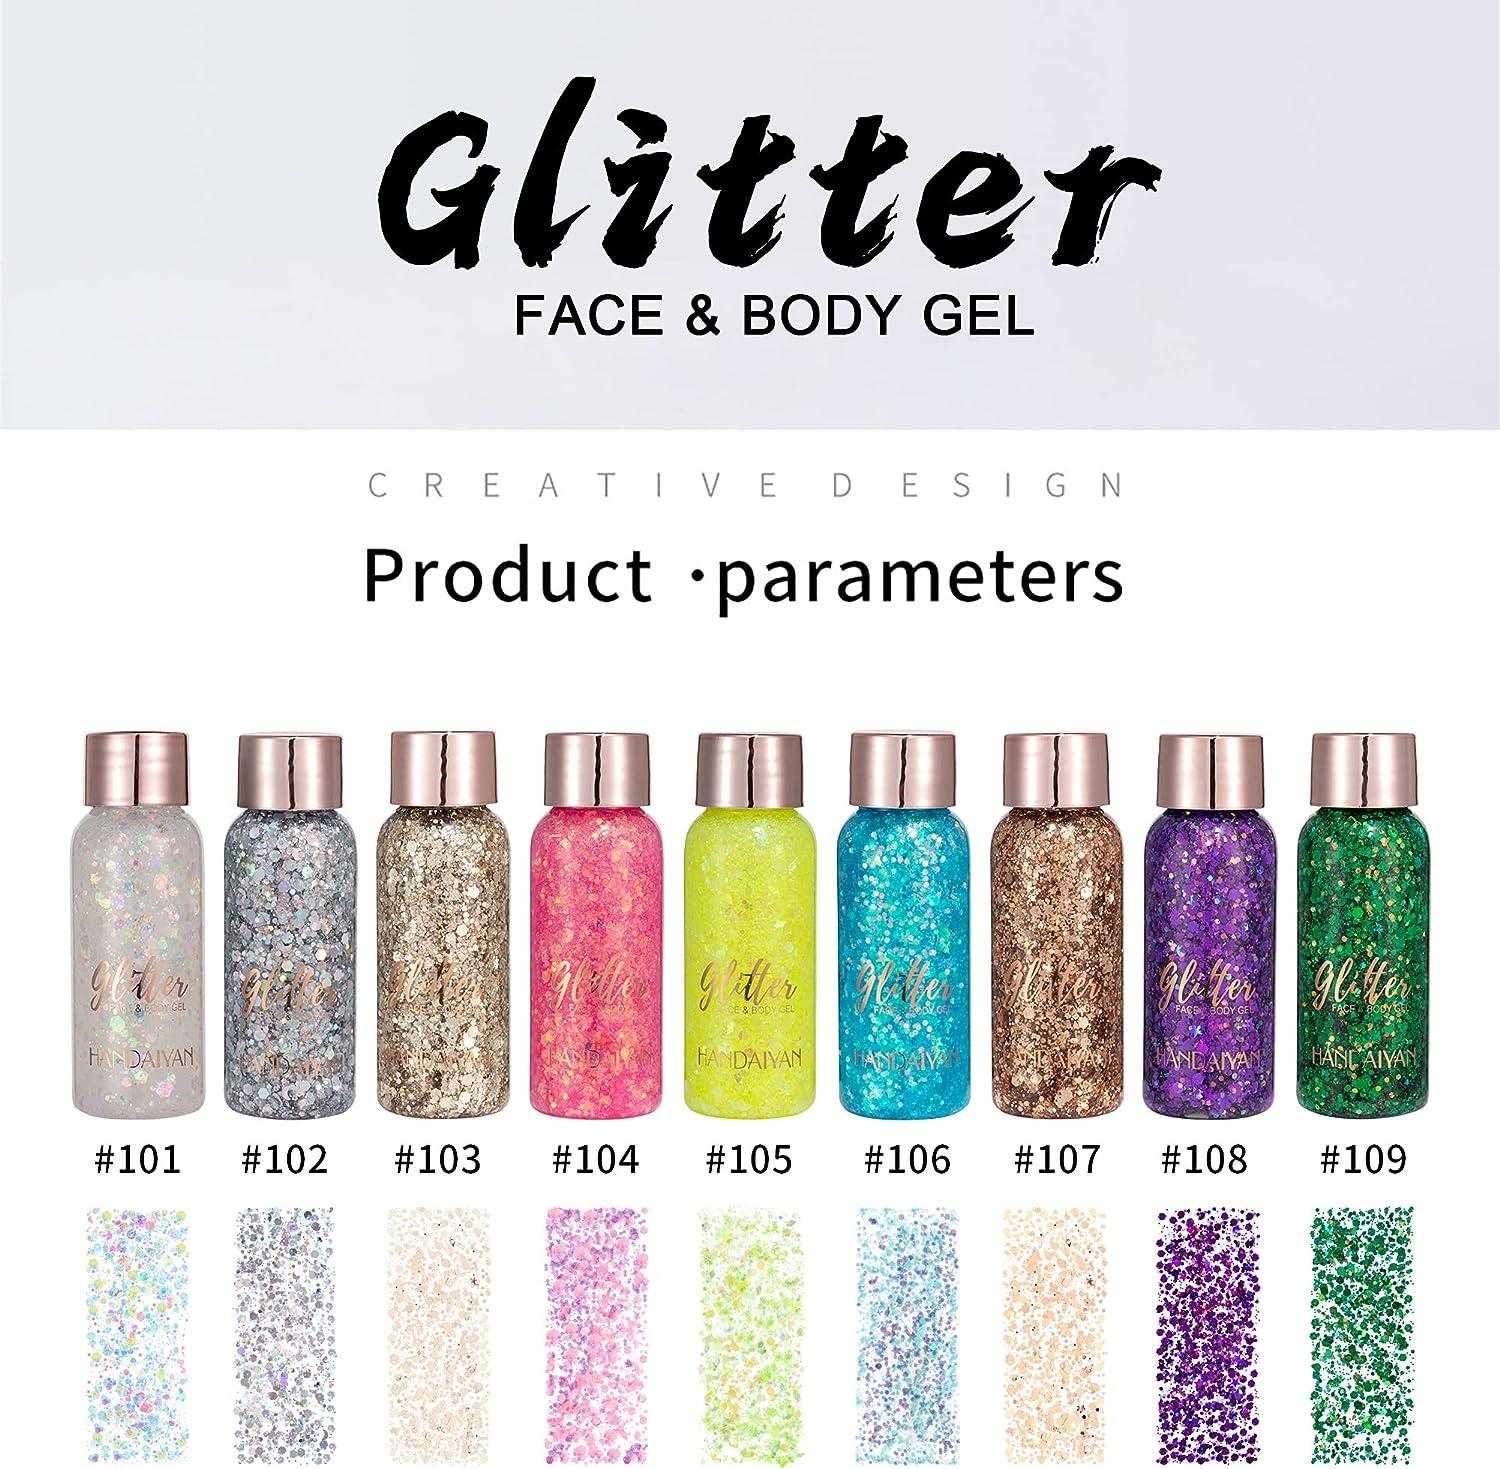 Multi-Colored Face & Body Glitter - Mermaid Sequin Body Glitter